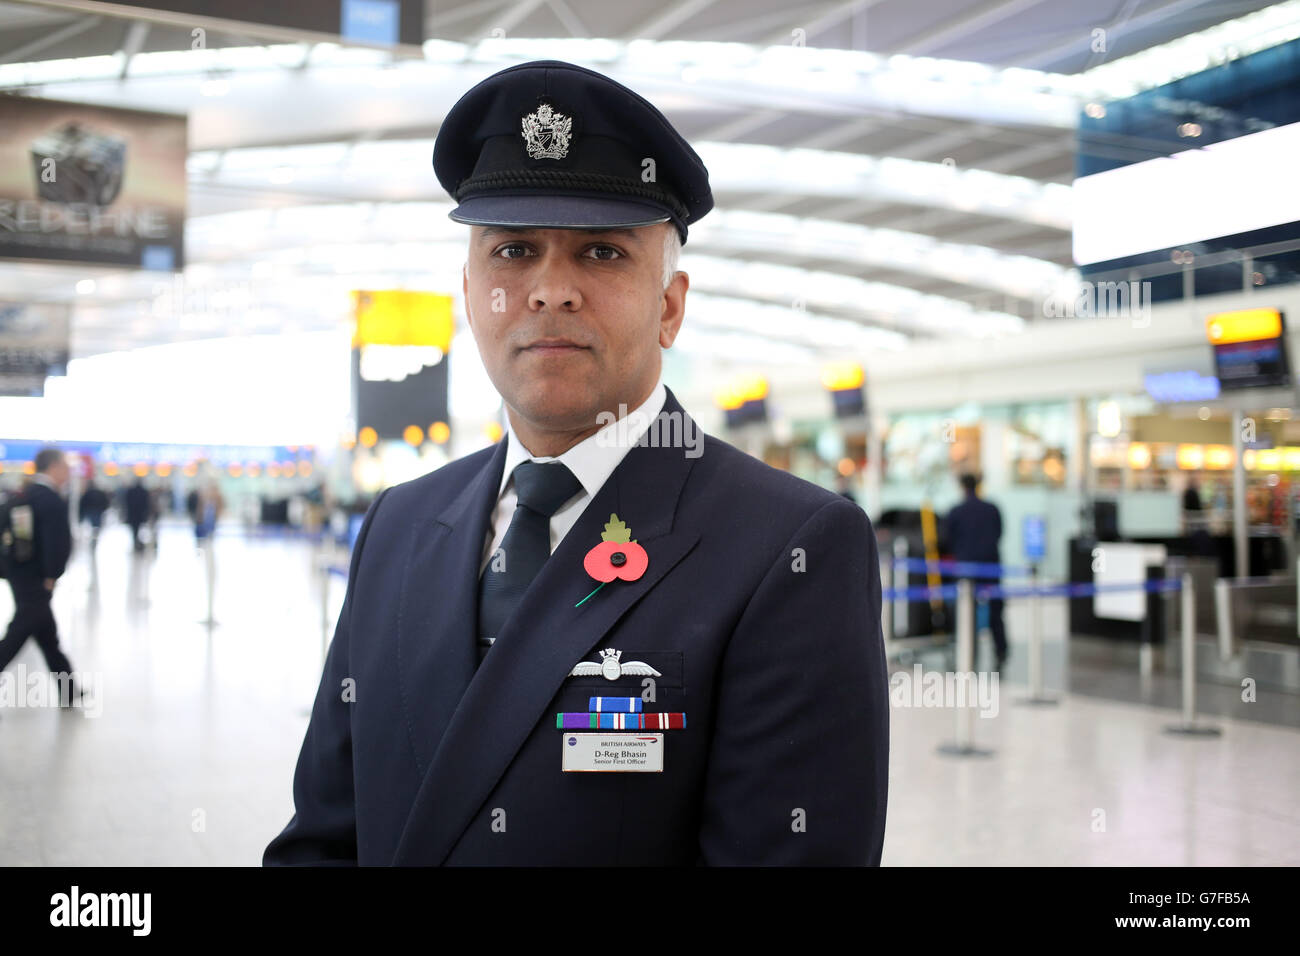 British Airways 787 primo ufficiale senior Dhaeraj Bhasin indossa onorificenze militari per i servizi per la NATO nell'ex Jugoslavia e Medaglia generale di servizio per le operazioni aeree in Iraq dopo aver partecipato ai due minuti di silenzio per il giorno dell'armistizio. Foto Stock